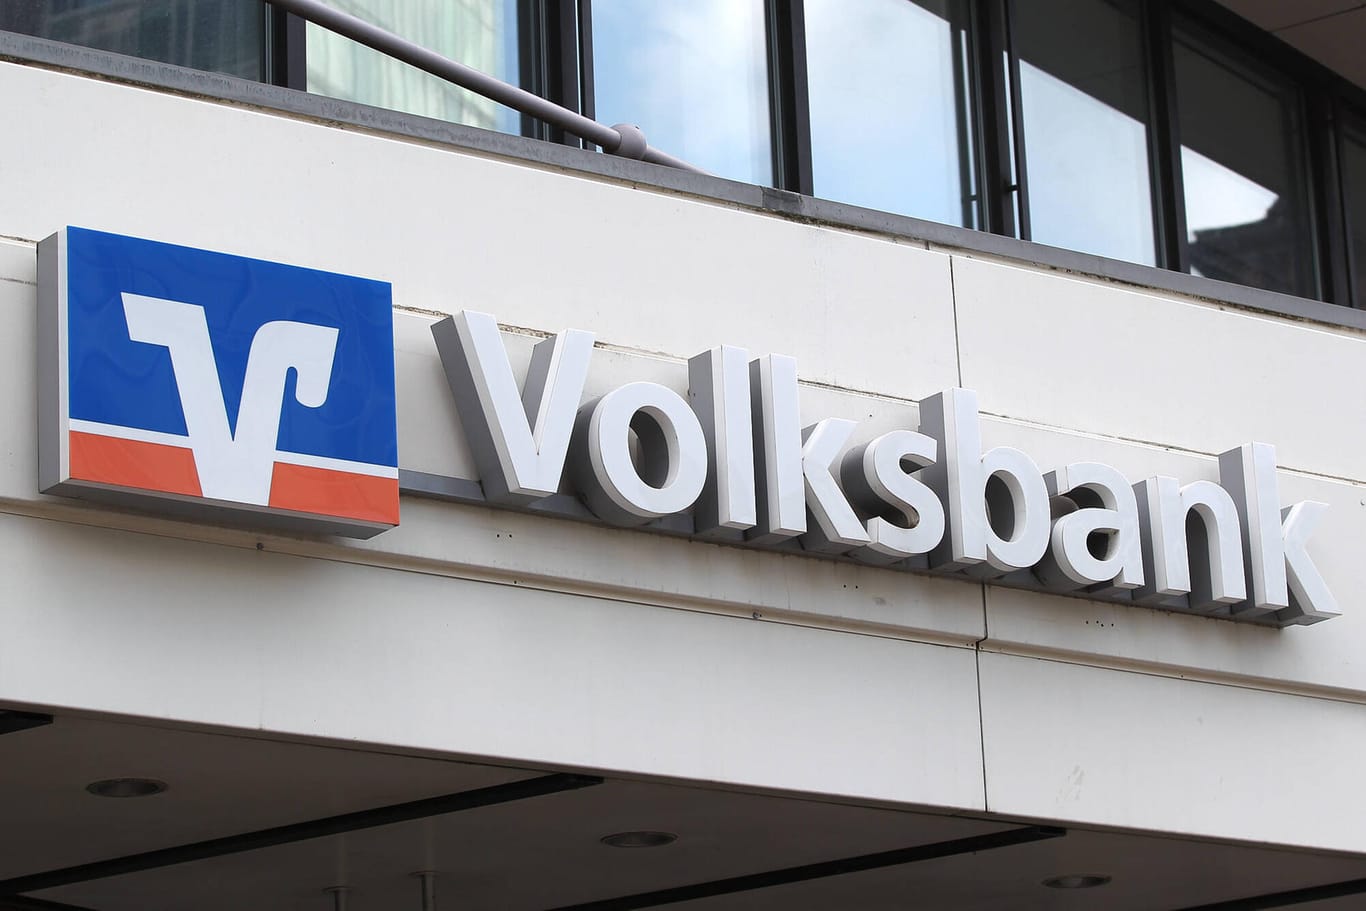 Volksbank-Logo (Symbolbild): Rückwirkend zum 1. Januar gehört die VR-Bank in Alzenau zur Frankfurter Volksbank.